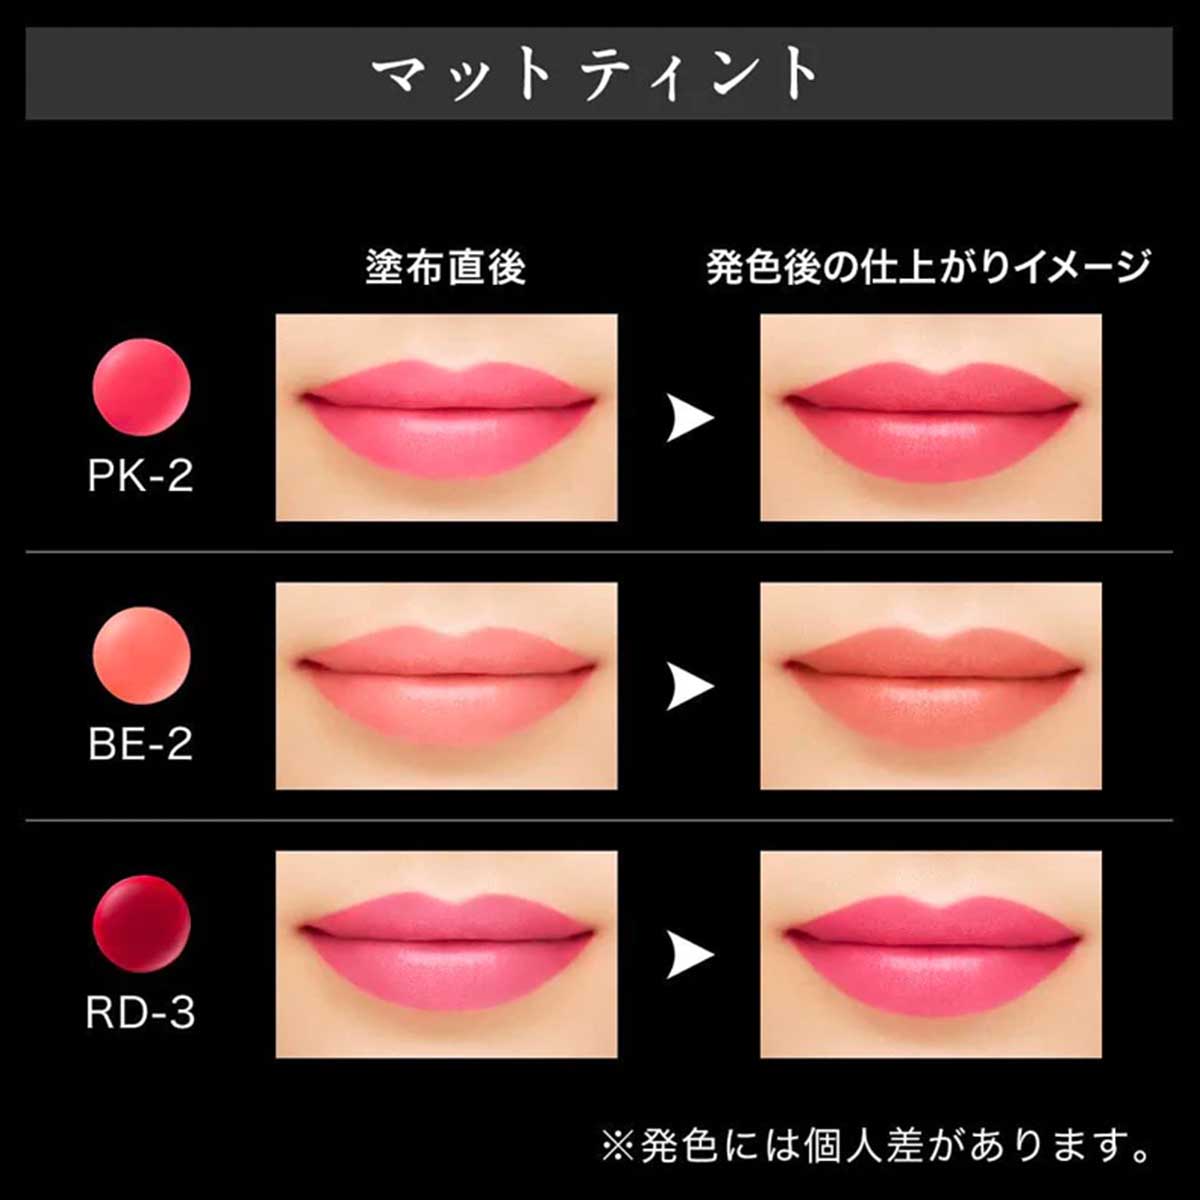 Color Lip Tint Matte #BE-2 Beige 6.5g